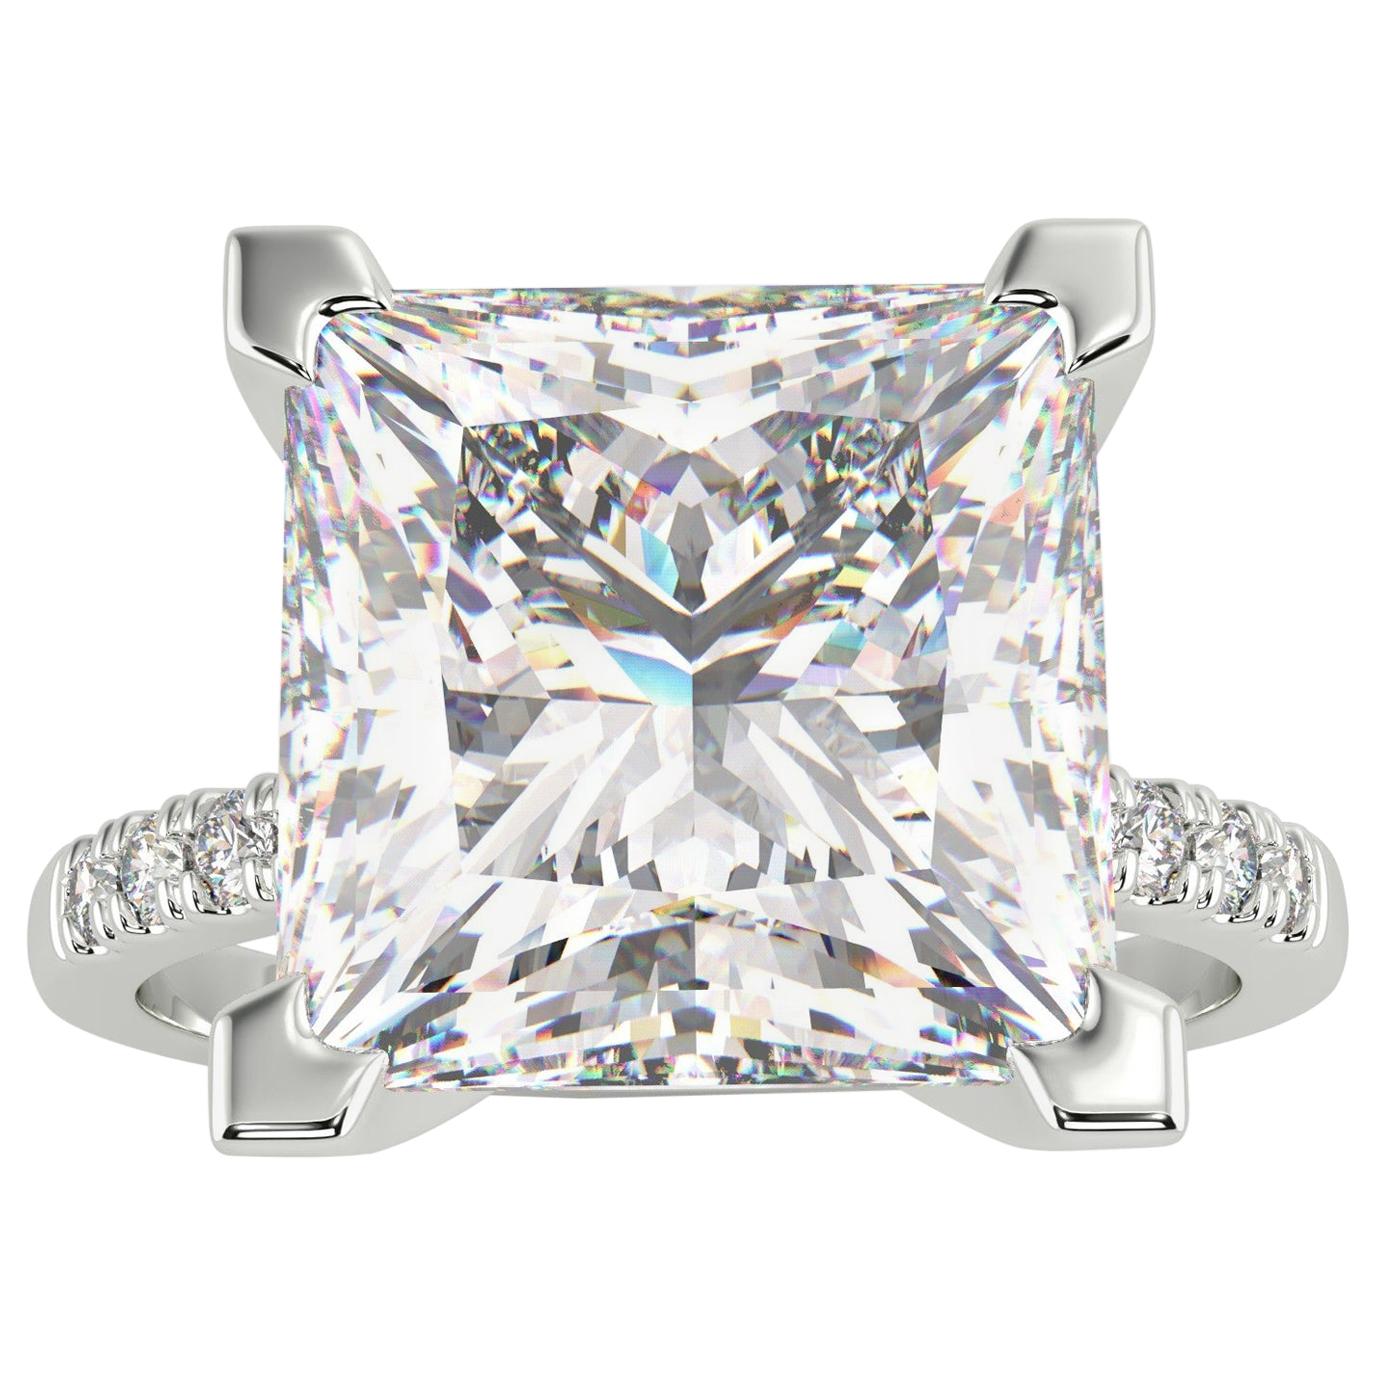 VVS1 GIA 5.03 Carat Princess Cut Diamond Platinum Ring